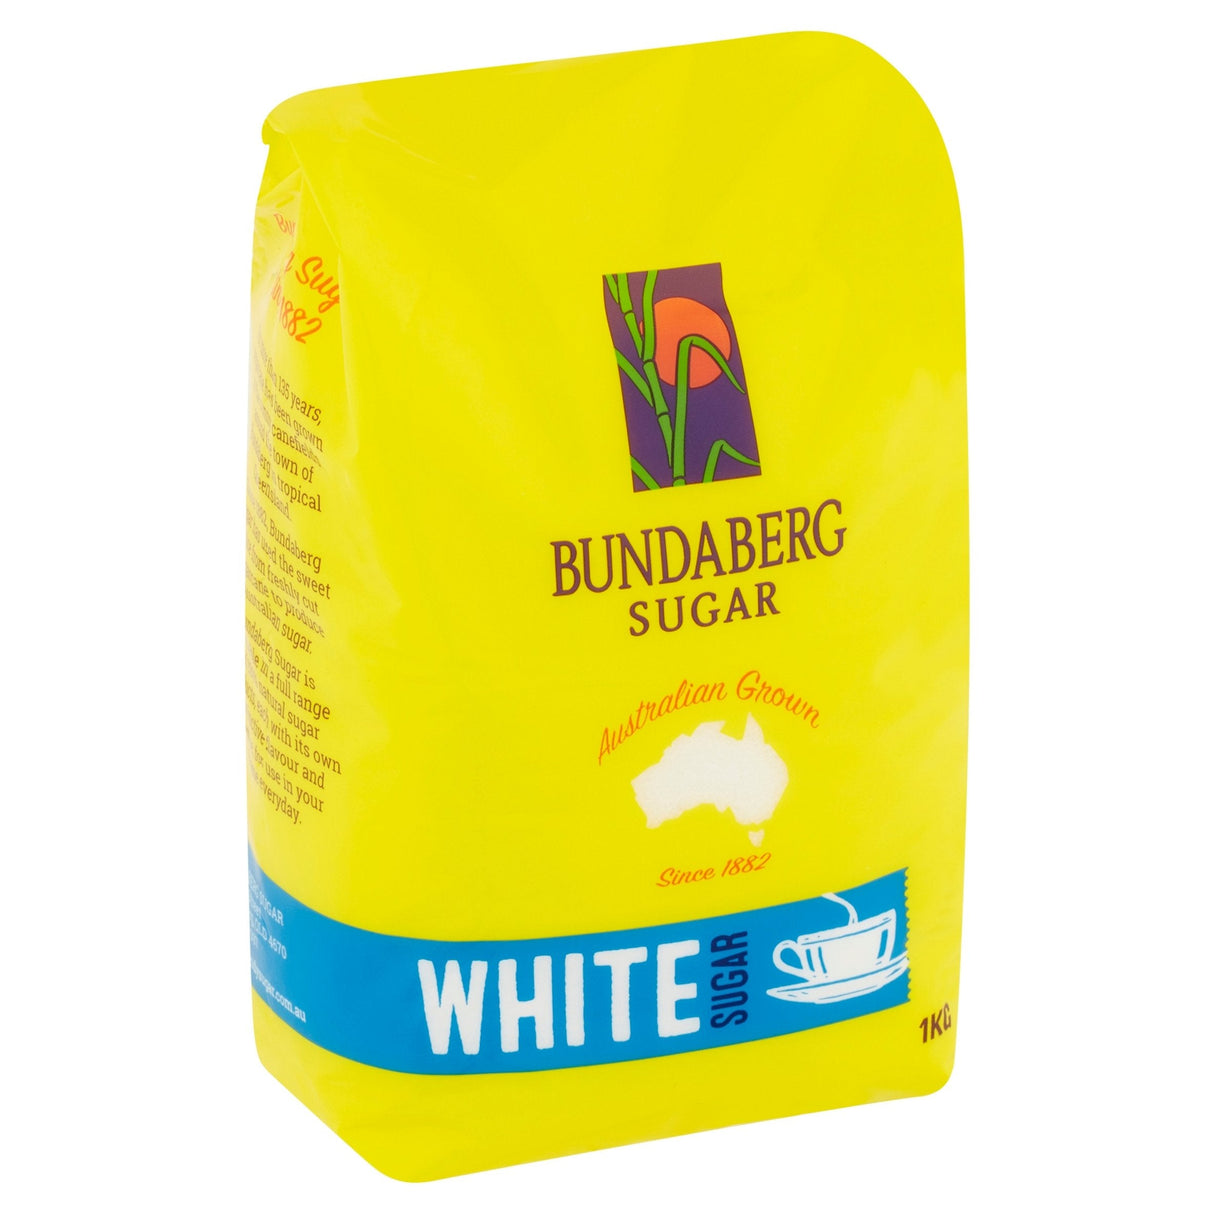 Bundaberg Sugar White Sugar 1kg